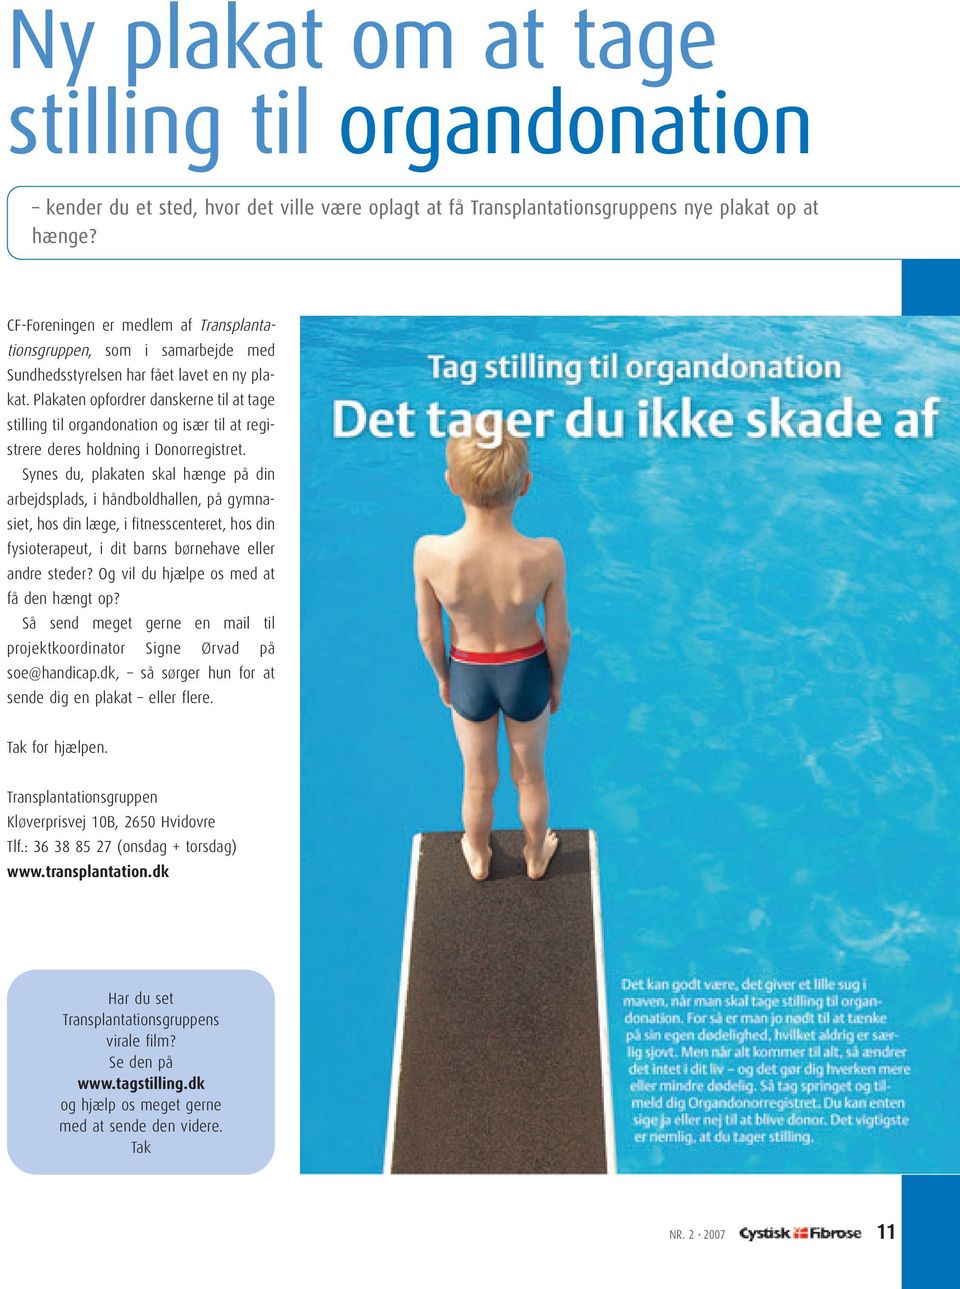 Plakaten opfordrer danskerne til at tage stilling til organdonation og især til at registrere deres holdning i Donorregistret.